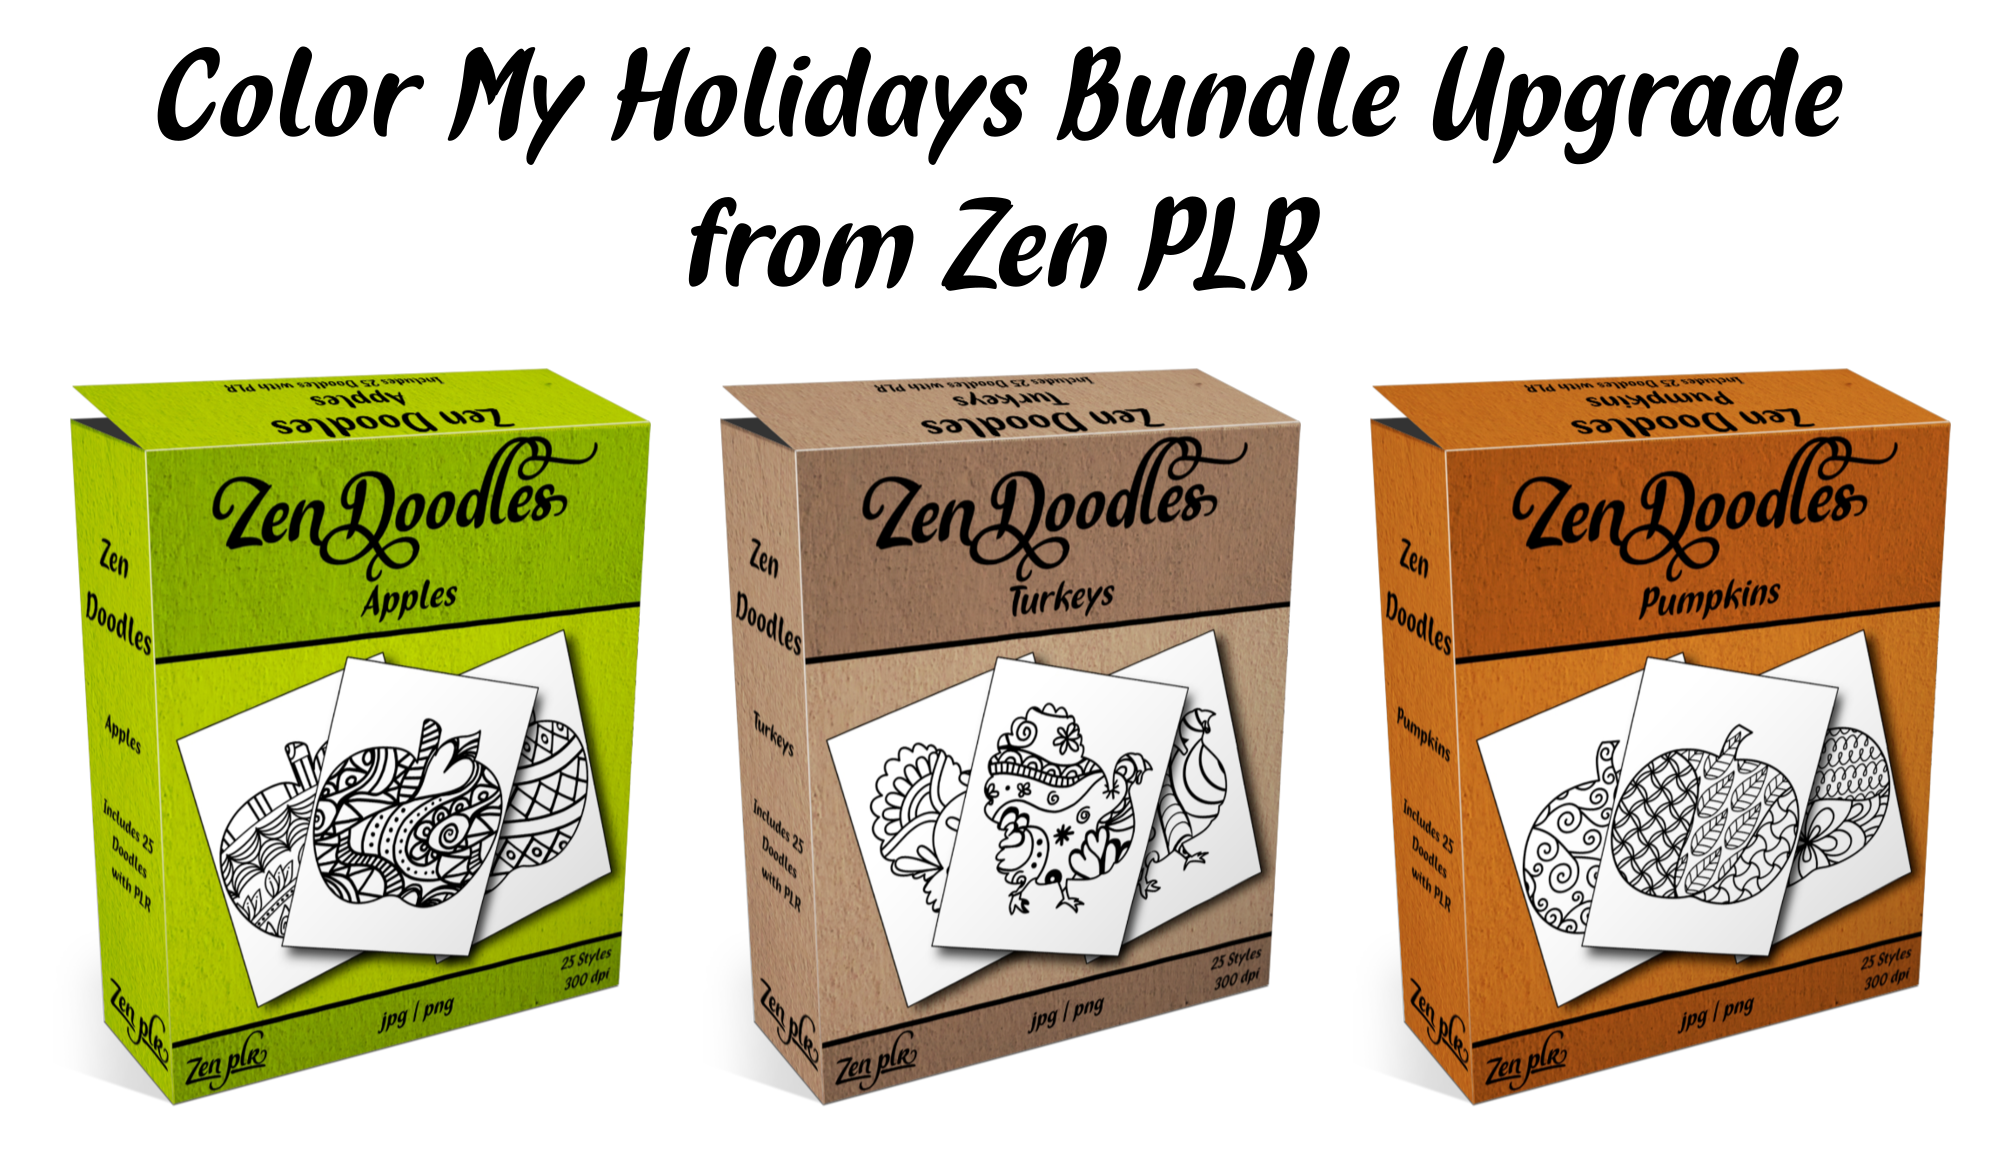 Zen PLR Upgrade for Color My Holidays Bundle